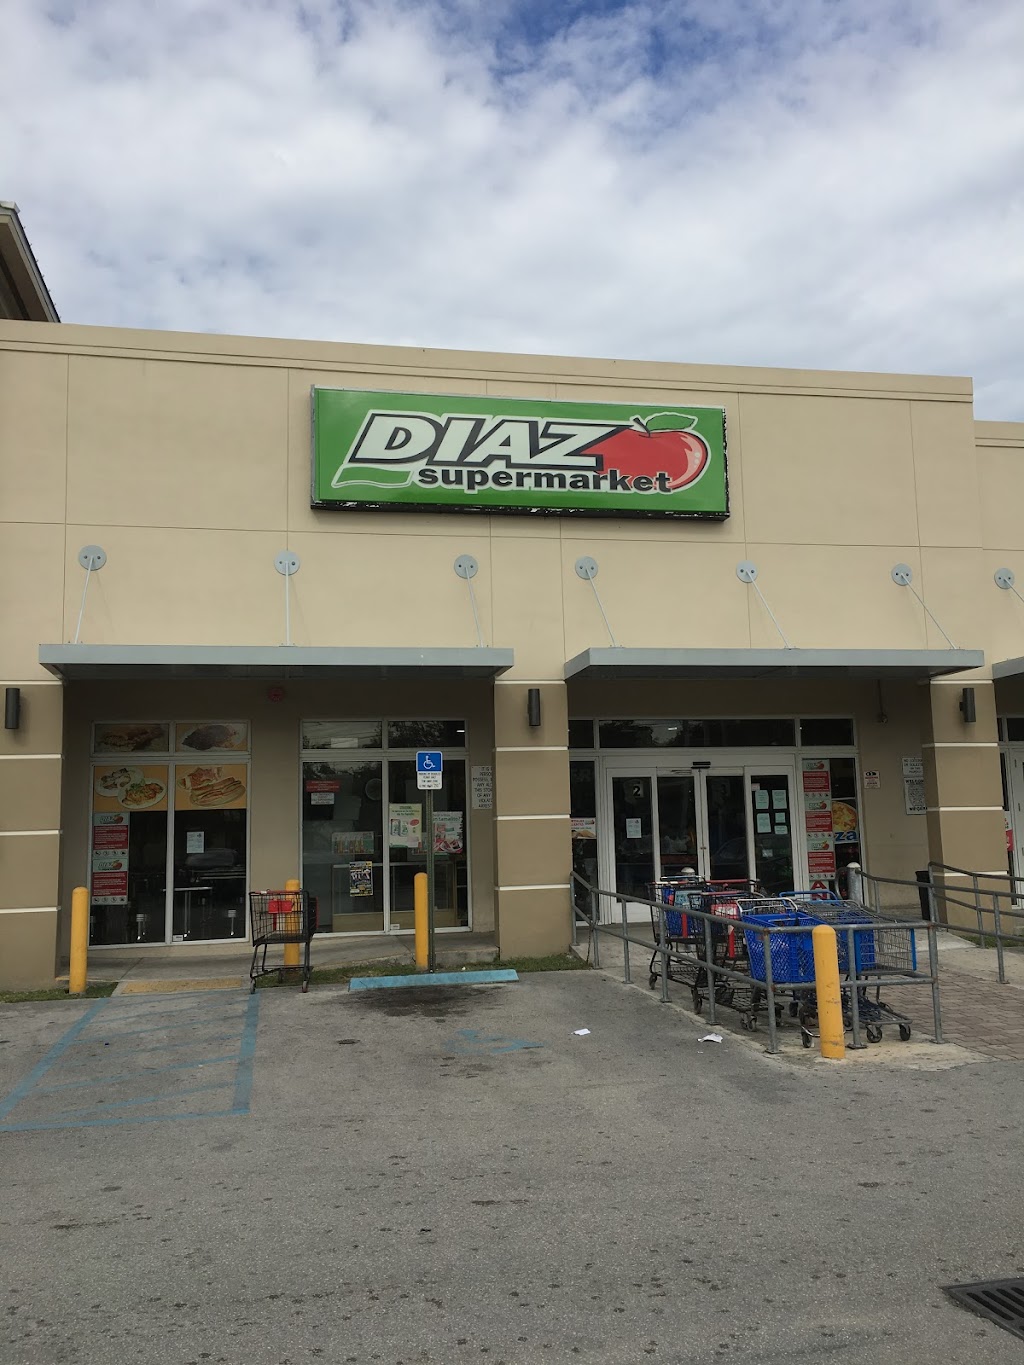 Diaz Restaurant Cafe | 13501 SW 268th St, Naranja, FL 33032, USA | Phone: (786) 481-2100